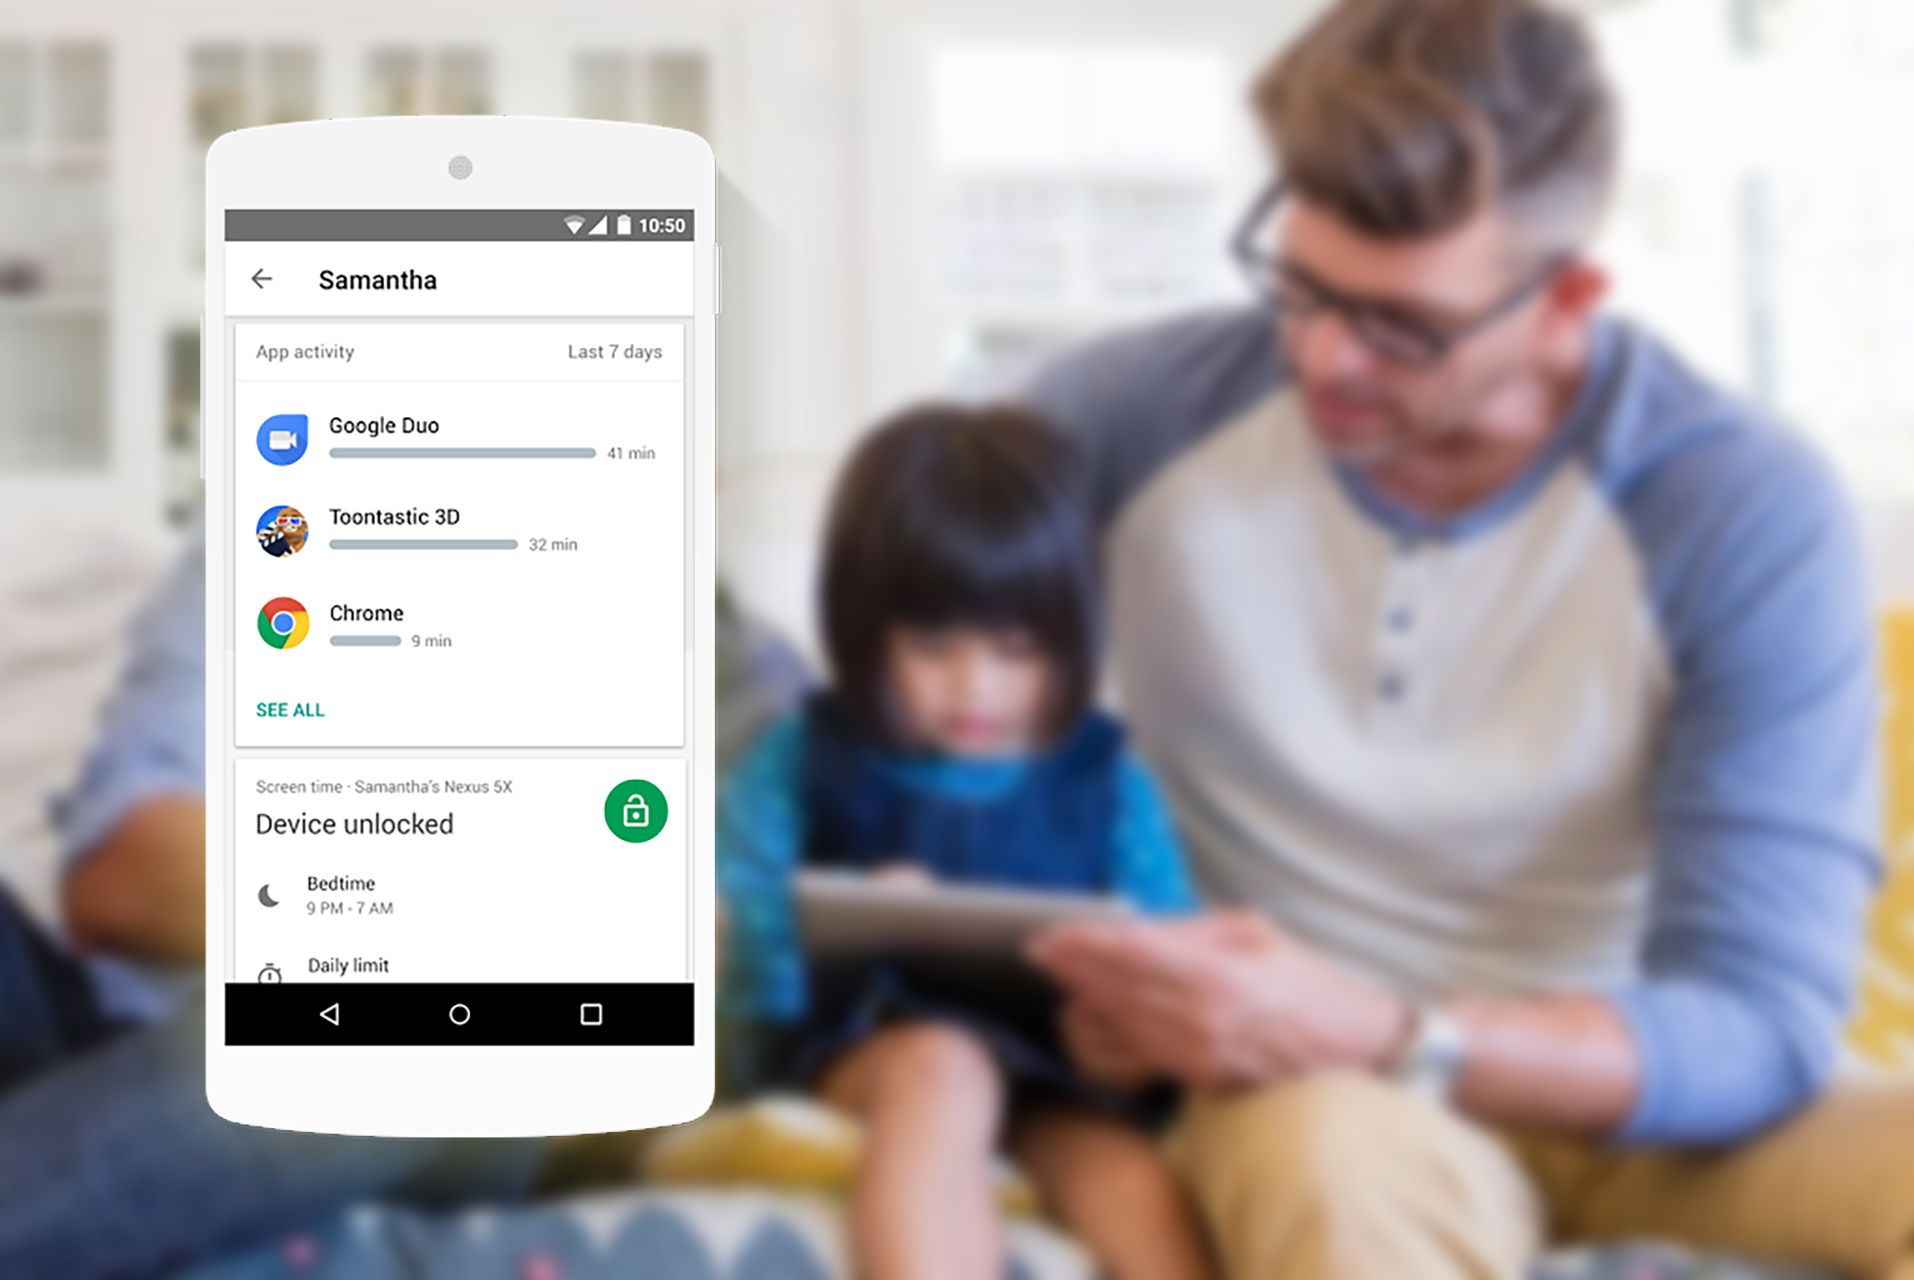 Aplicativo do Google Family Link - o que os pais precisam saber